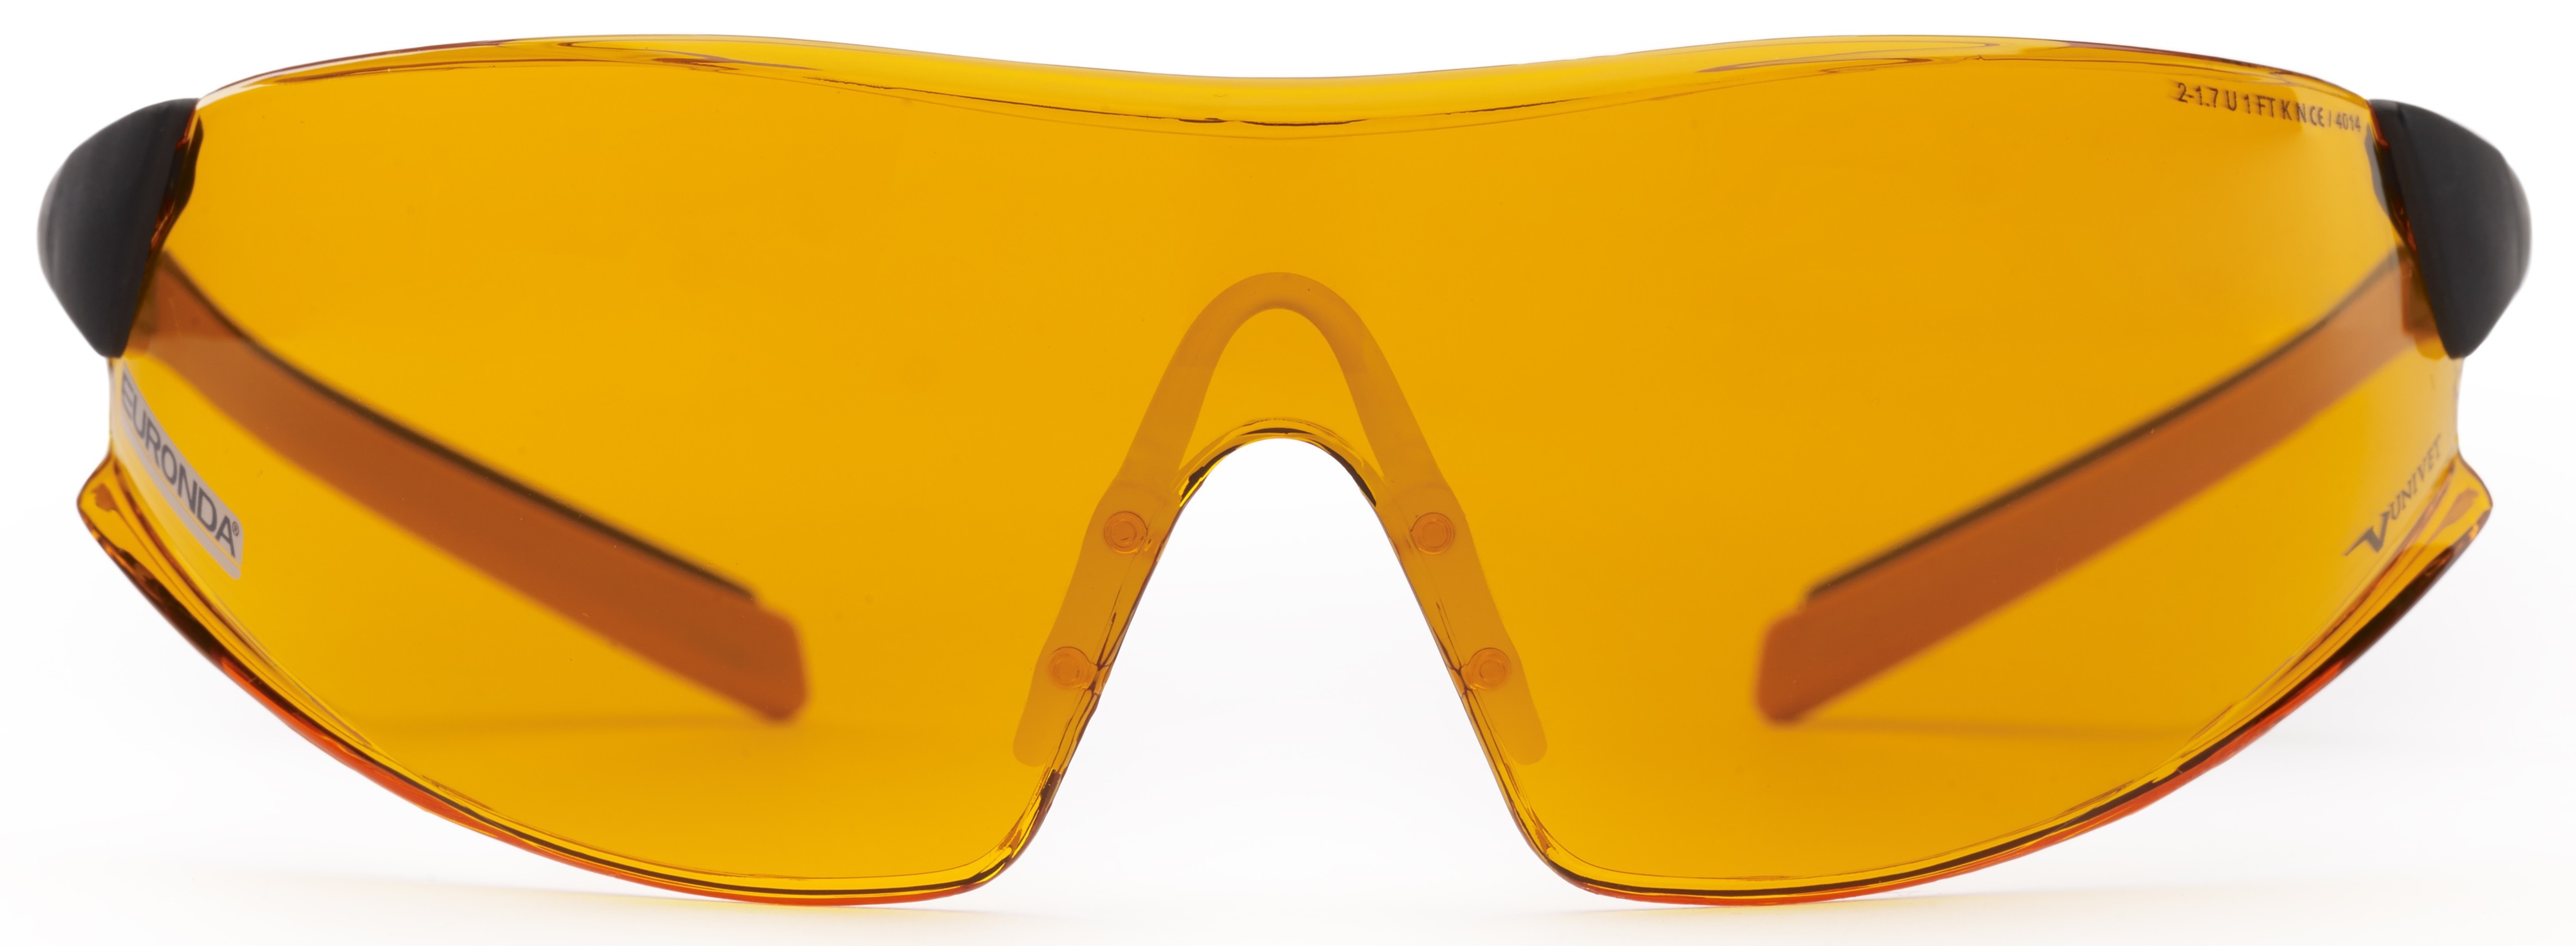 Glaevo Monoart Evolution narancs védőszemüveg